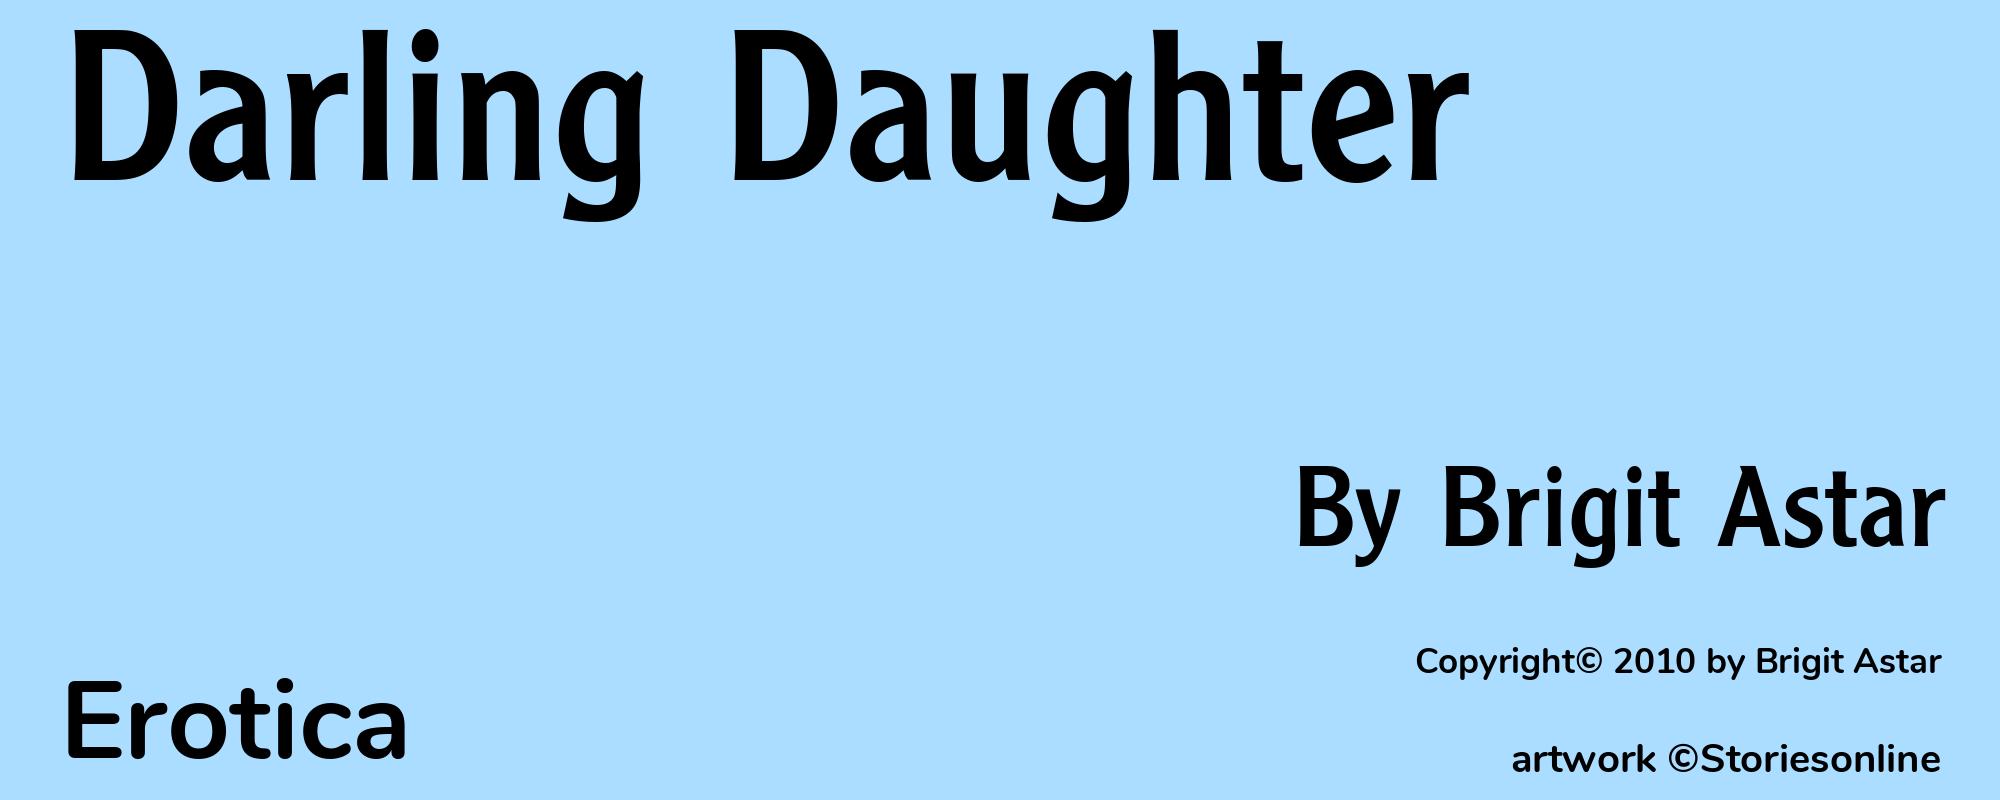 Darling Daughter - Cover